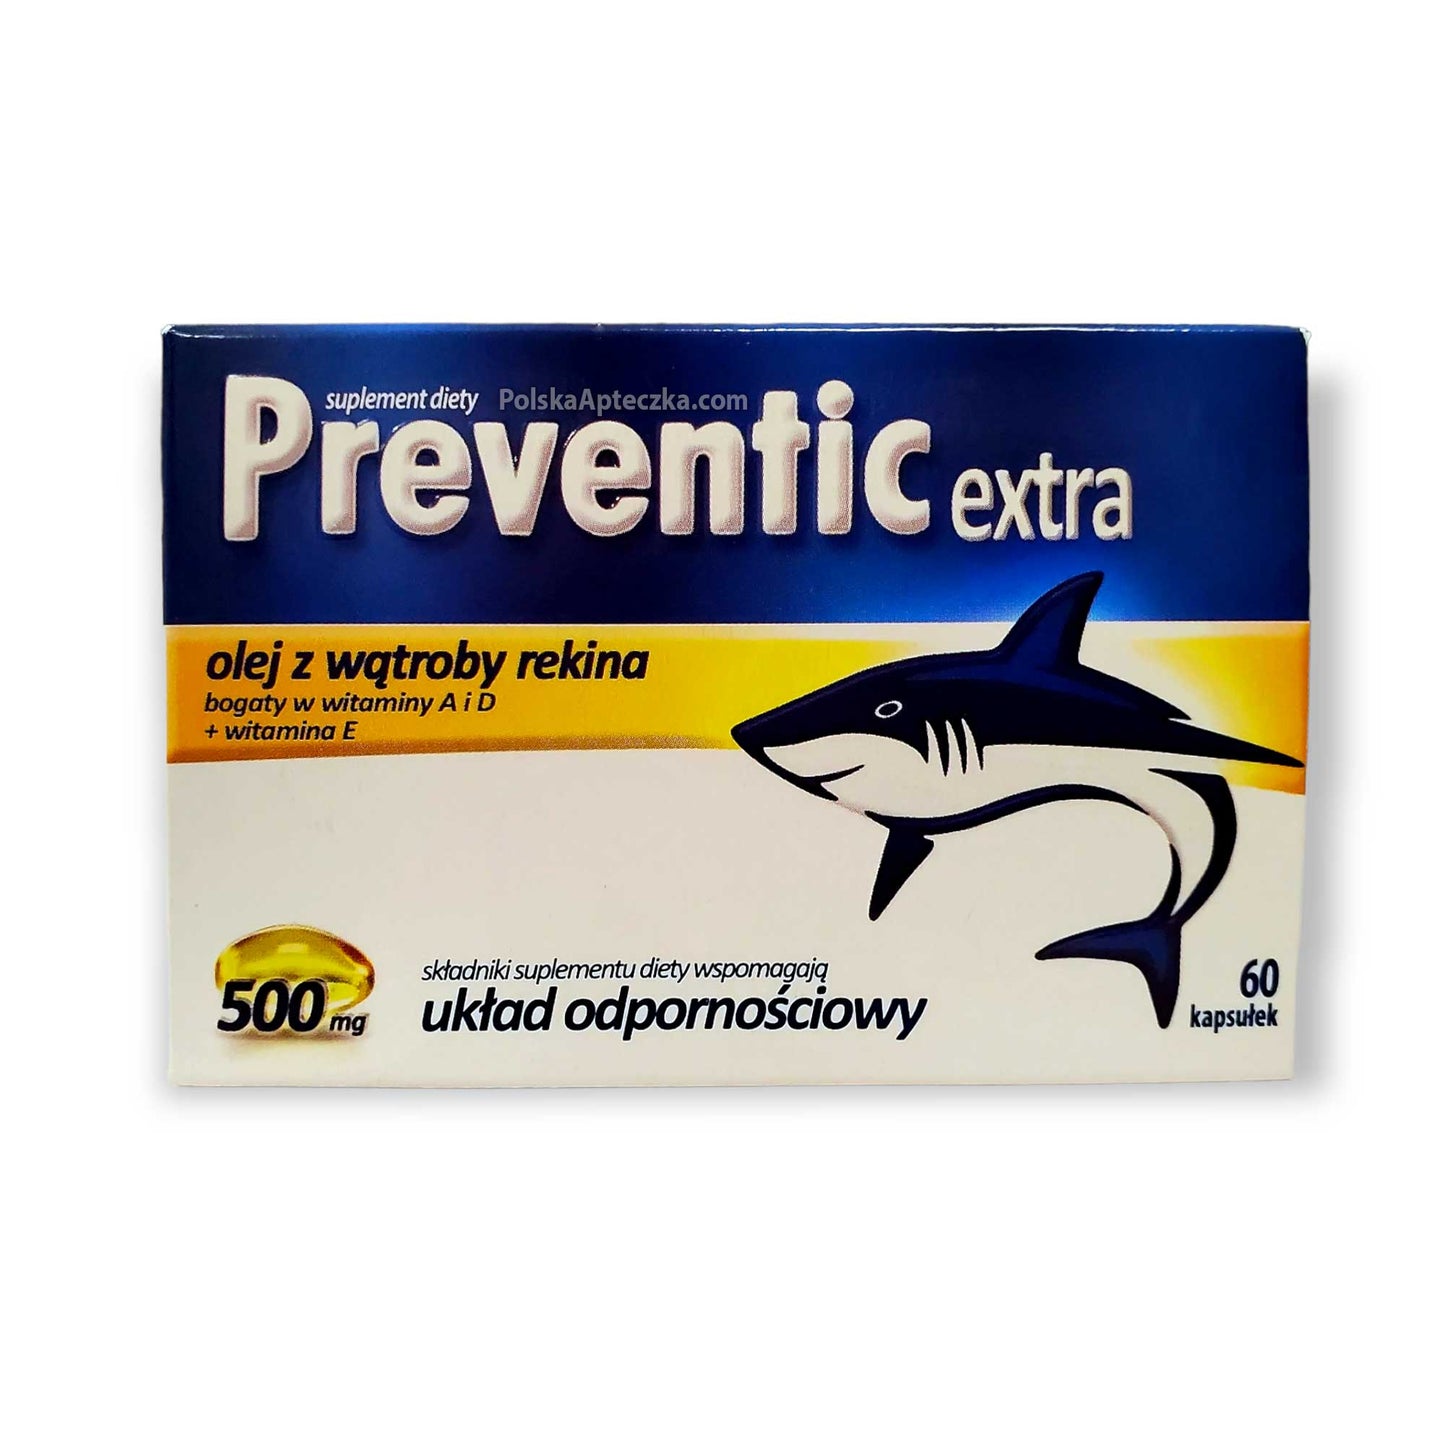 Preventic Extra 500, olej z wątroby rekina, 60  kapsułek